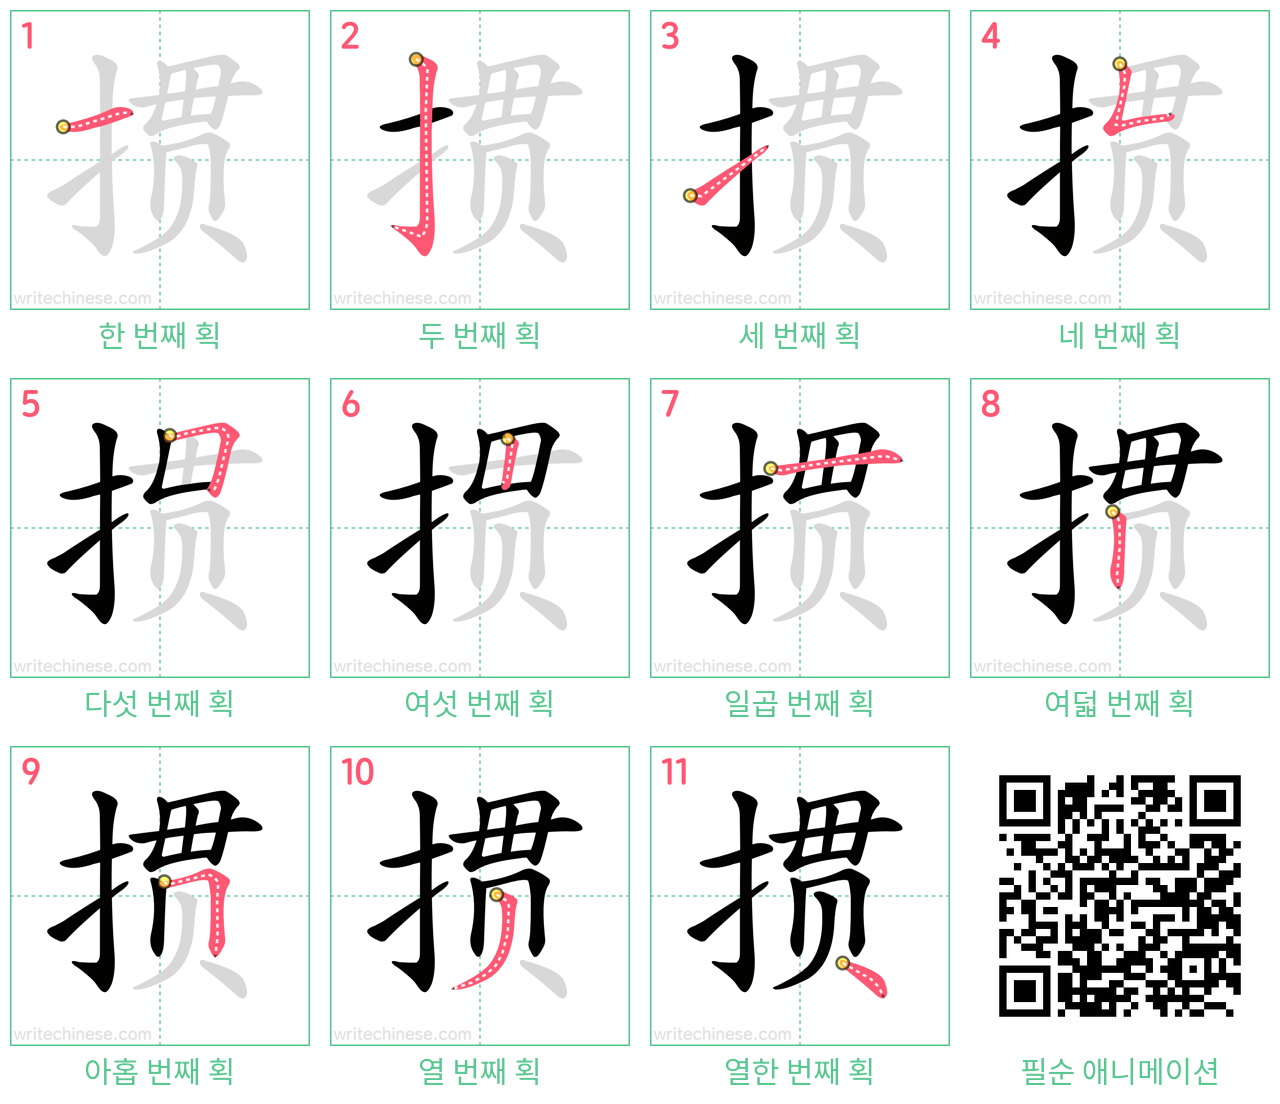 掼 step-by-step stroke order diagrams